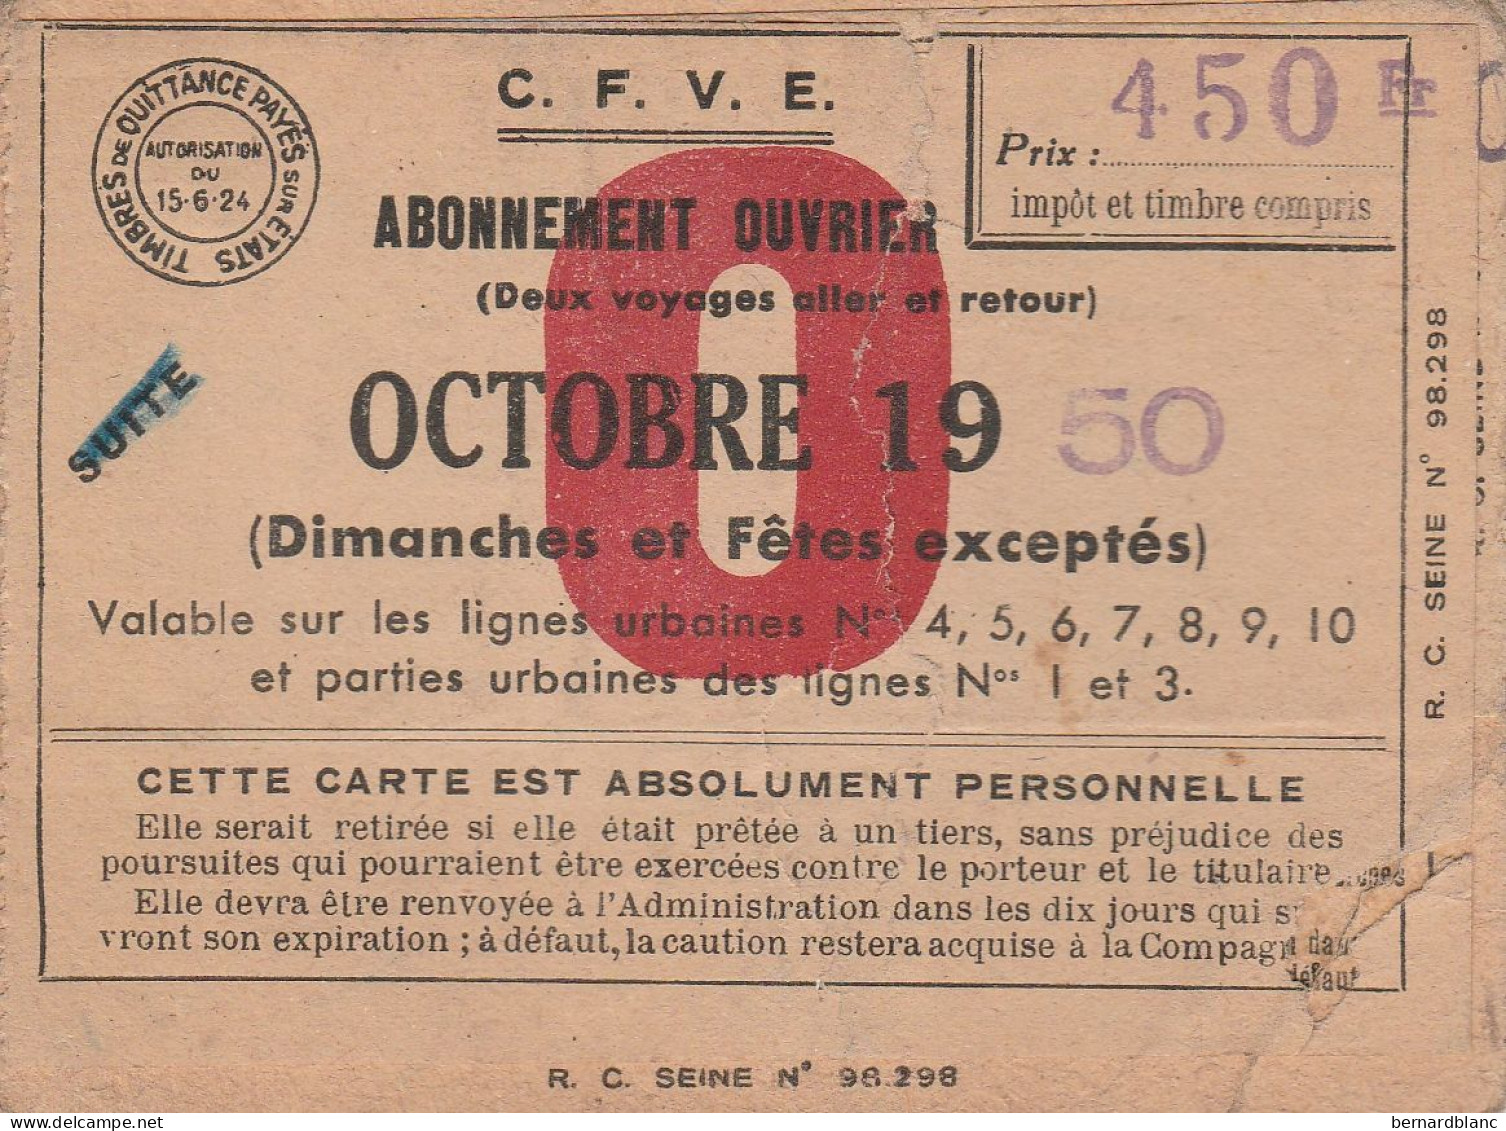 ABONNEMENT OUVRIER OCTOBRE 1950 - Unclassified